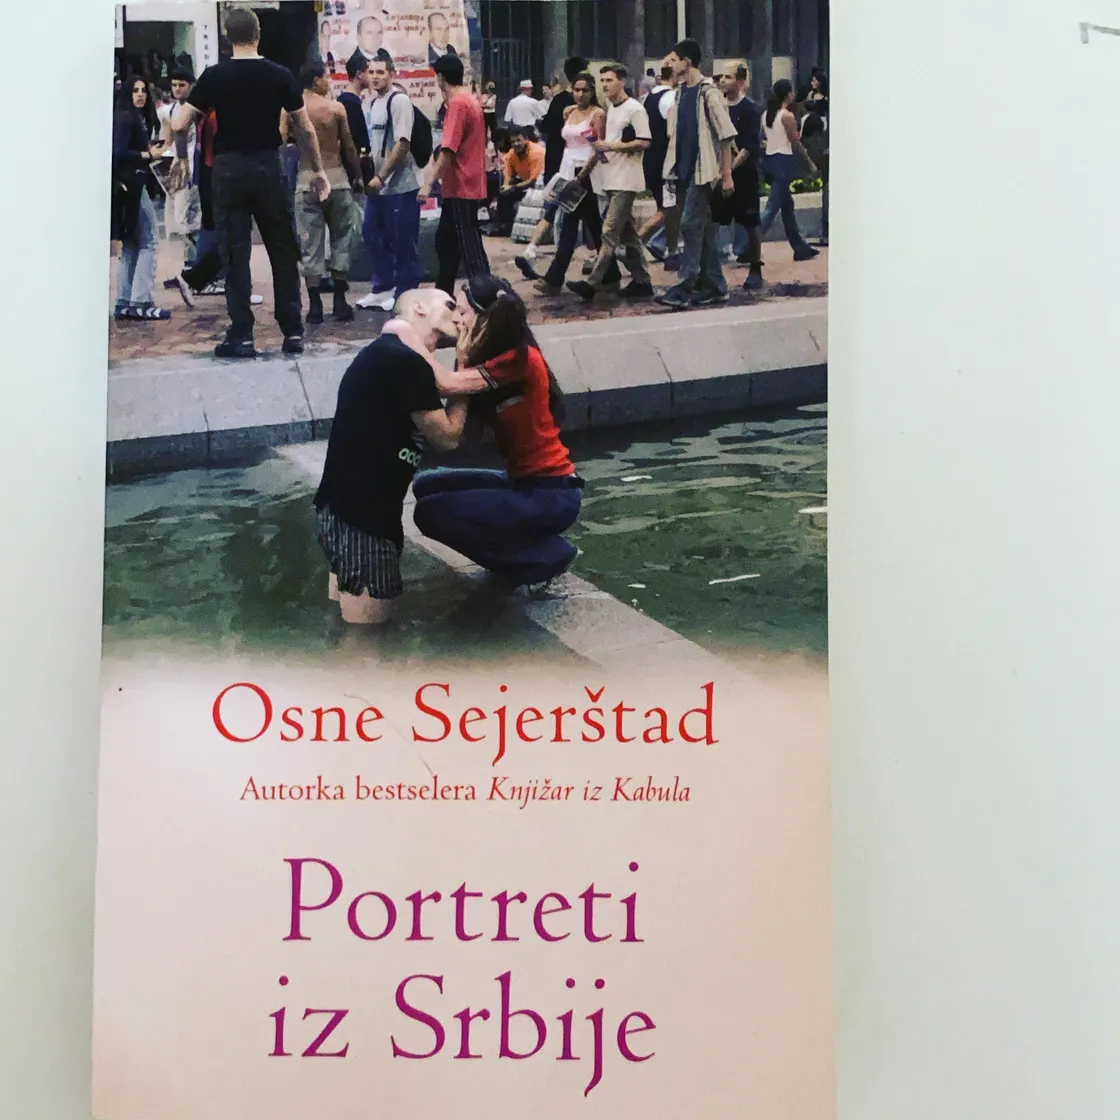 Portreti Iz Srbije – Osne Sejerstad